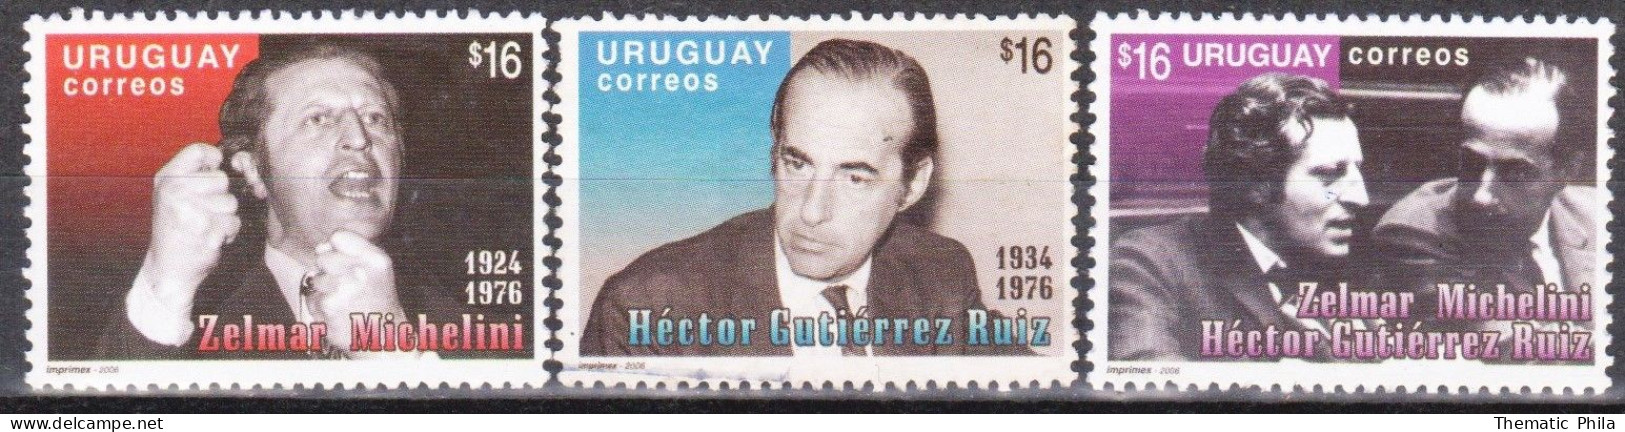 2006 URUGUAY New And Used Yv 2269/71 Politicians Politics Michelini - Gutierrez Ruiz - Uruguay